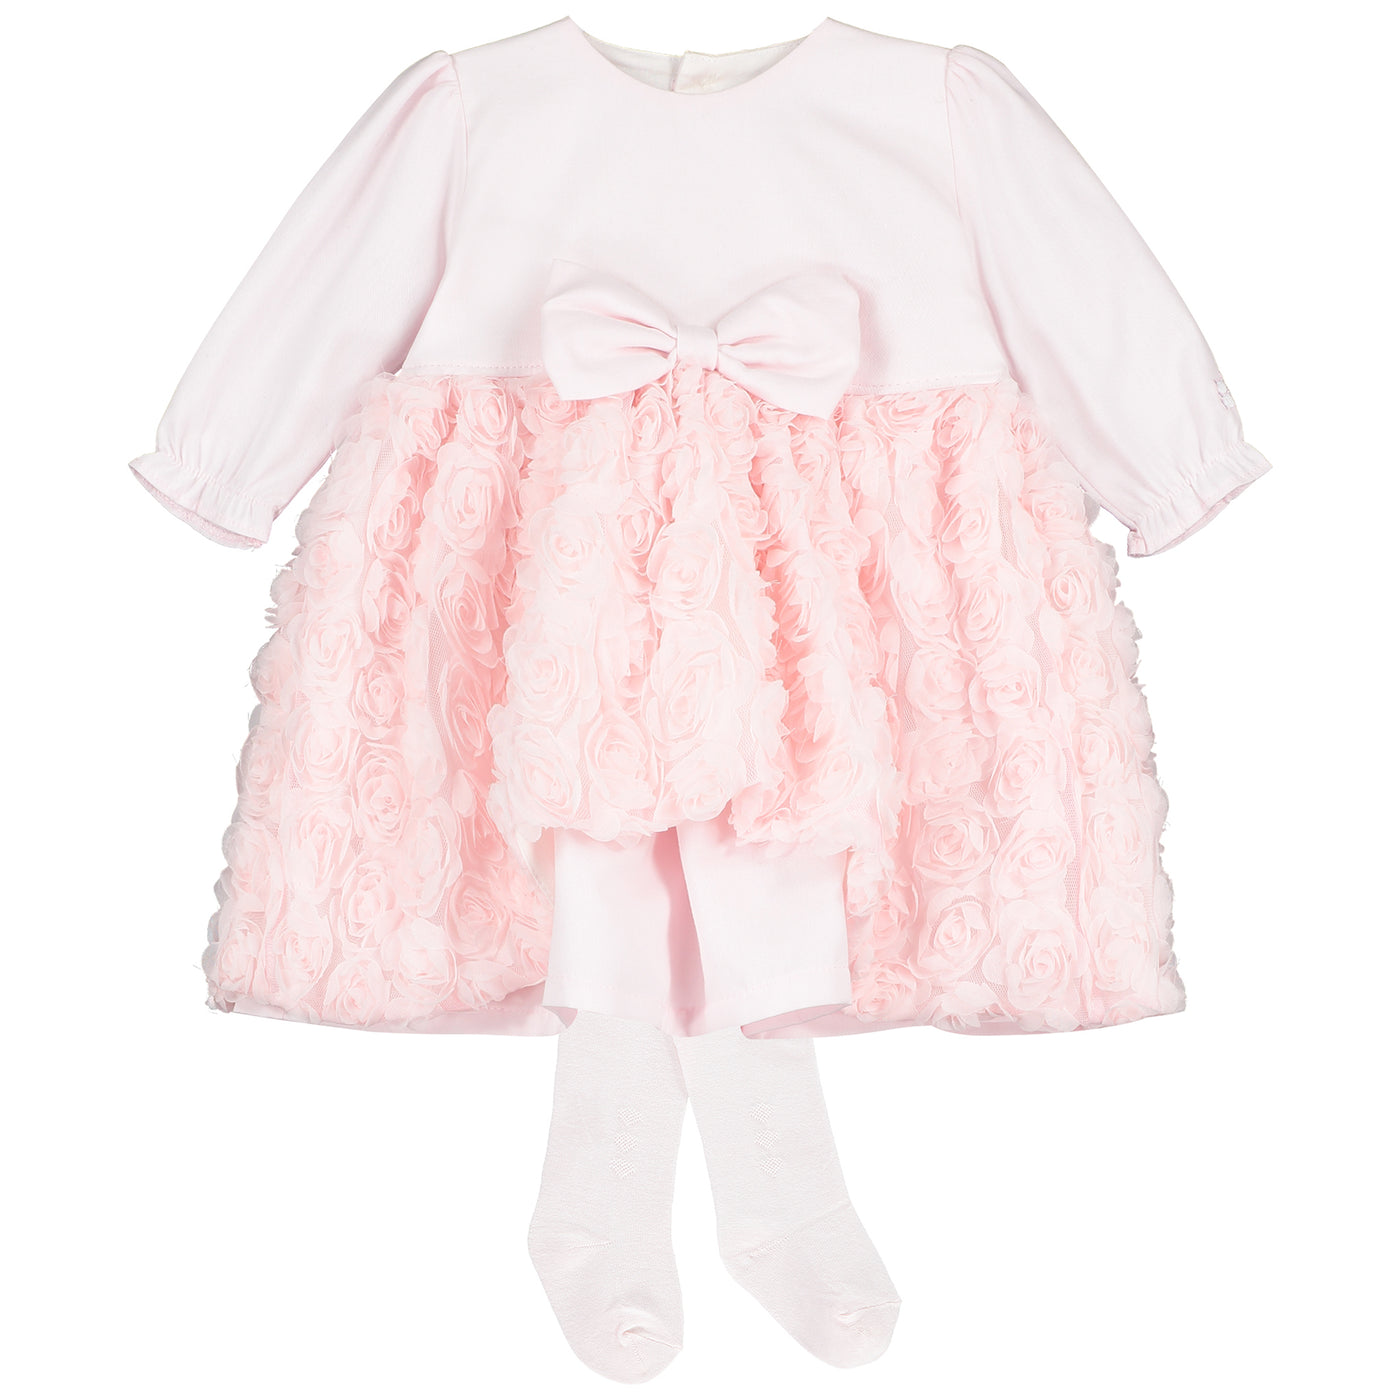 Coco Pink Baby-Mädchen-Partykleid mit Strumpfhosen